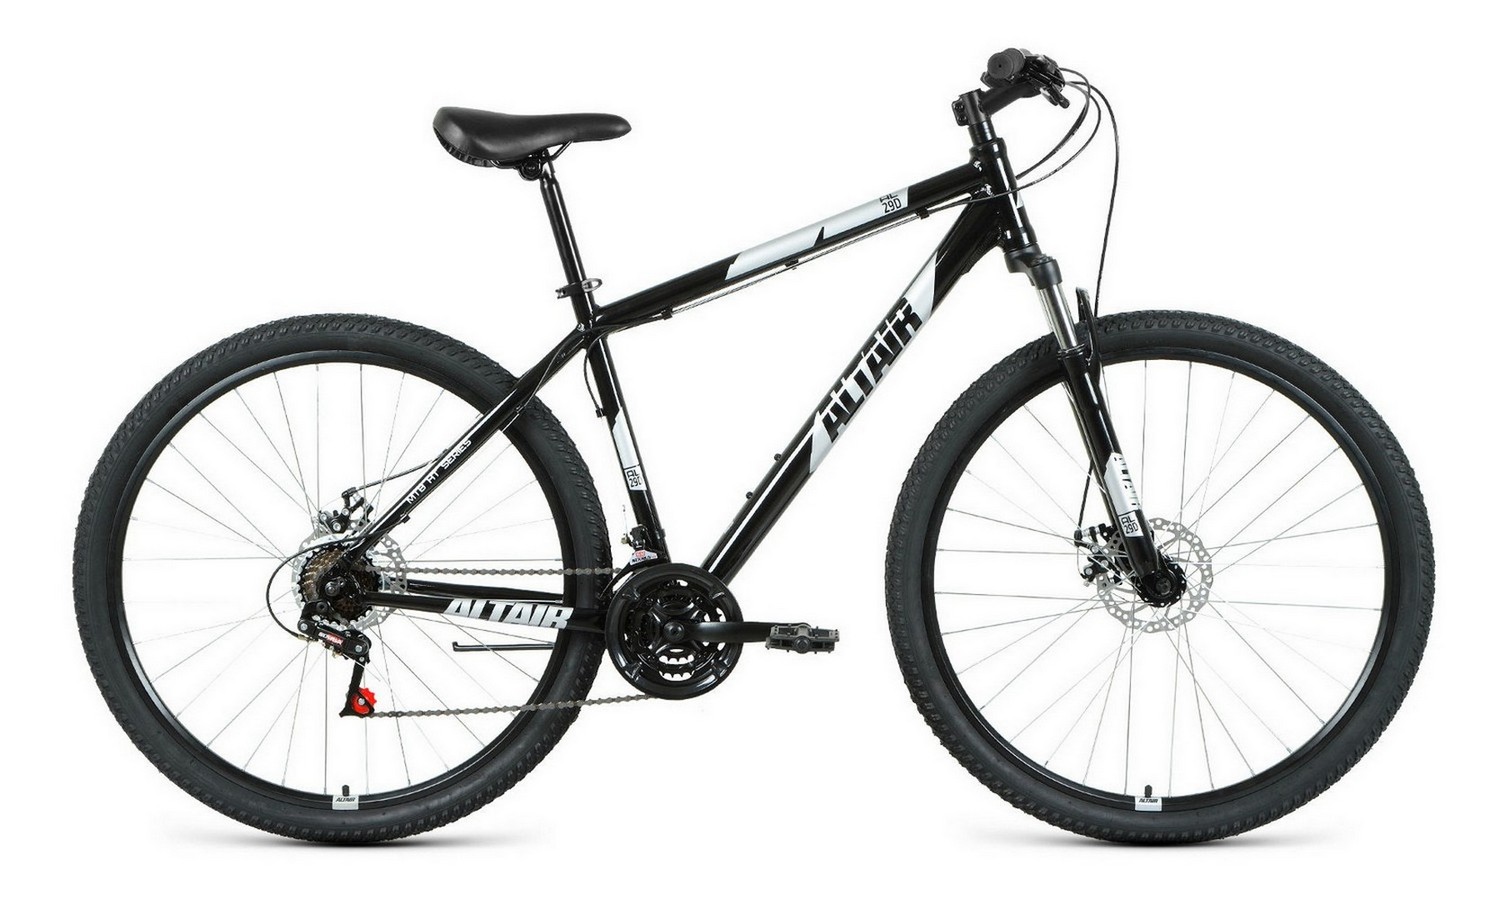 Горный велосипед Altair AL 29 D, год 2021, цвет Черный-Серебристый, ростовка 19